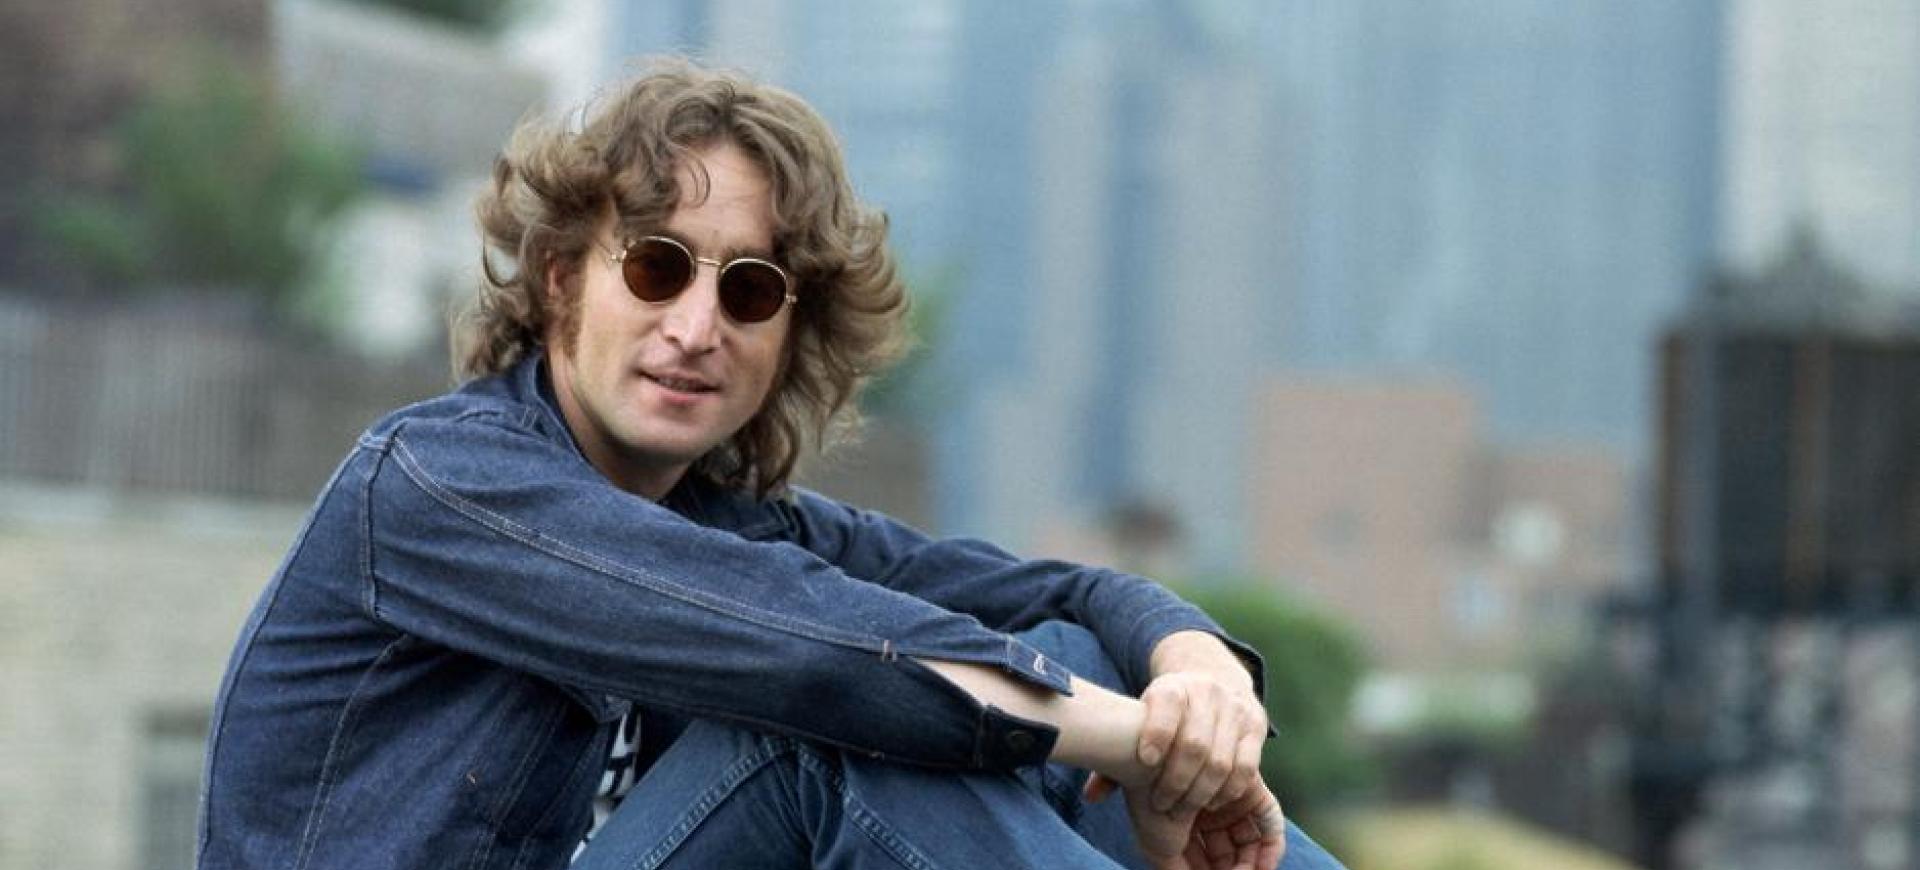 8 dicembre 1980, ci lasciava John Lennon: ecco 5 strane curiosità sull’artista